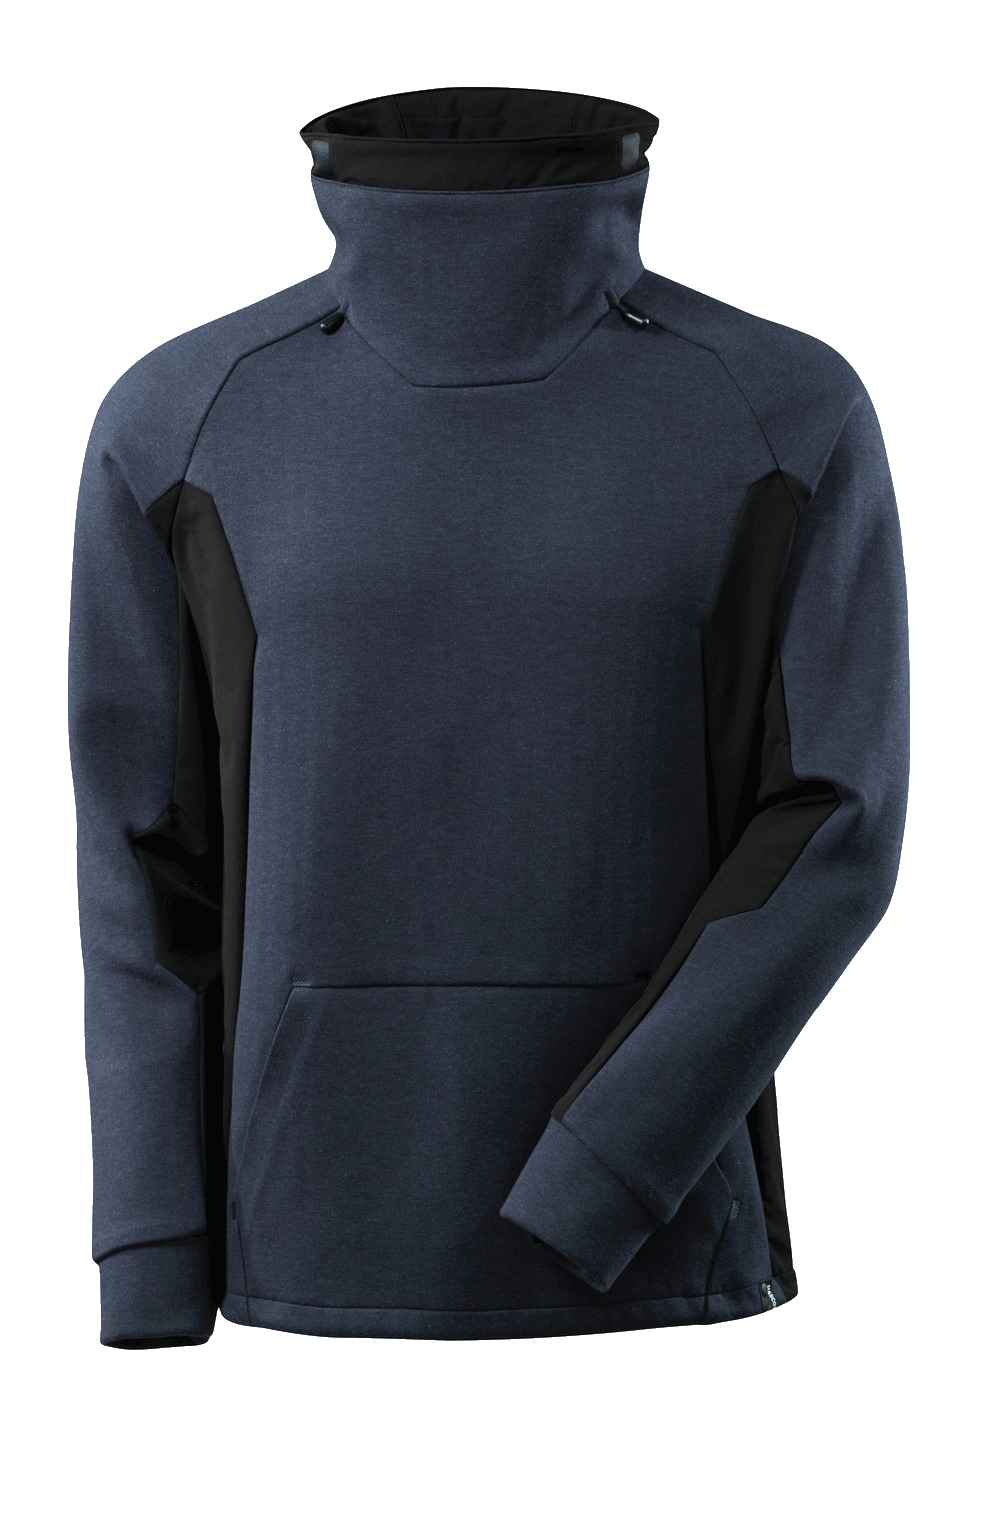 Herren Sweatshirt Mascot Advanced 17584-319 dunkelmarine/schwarz 01009_1